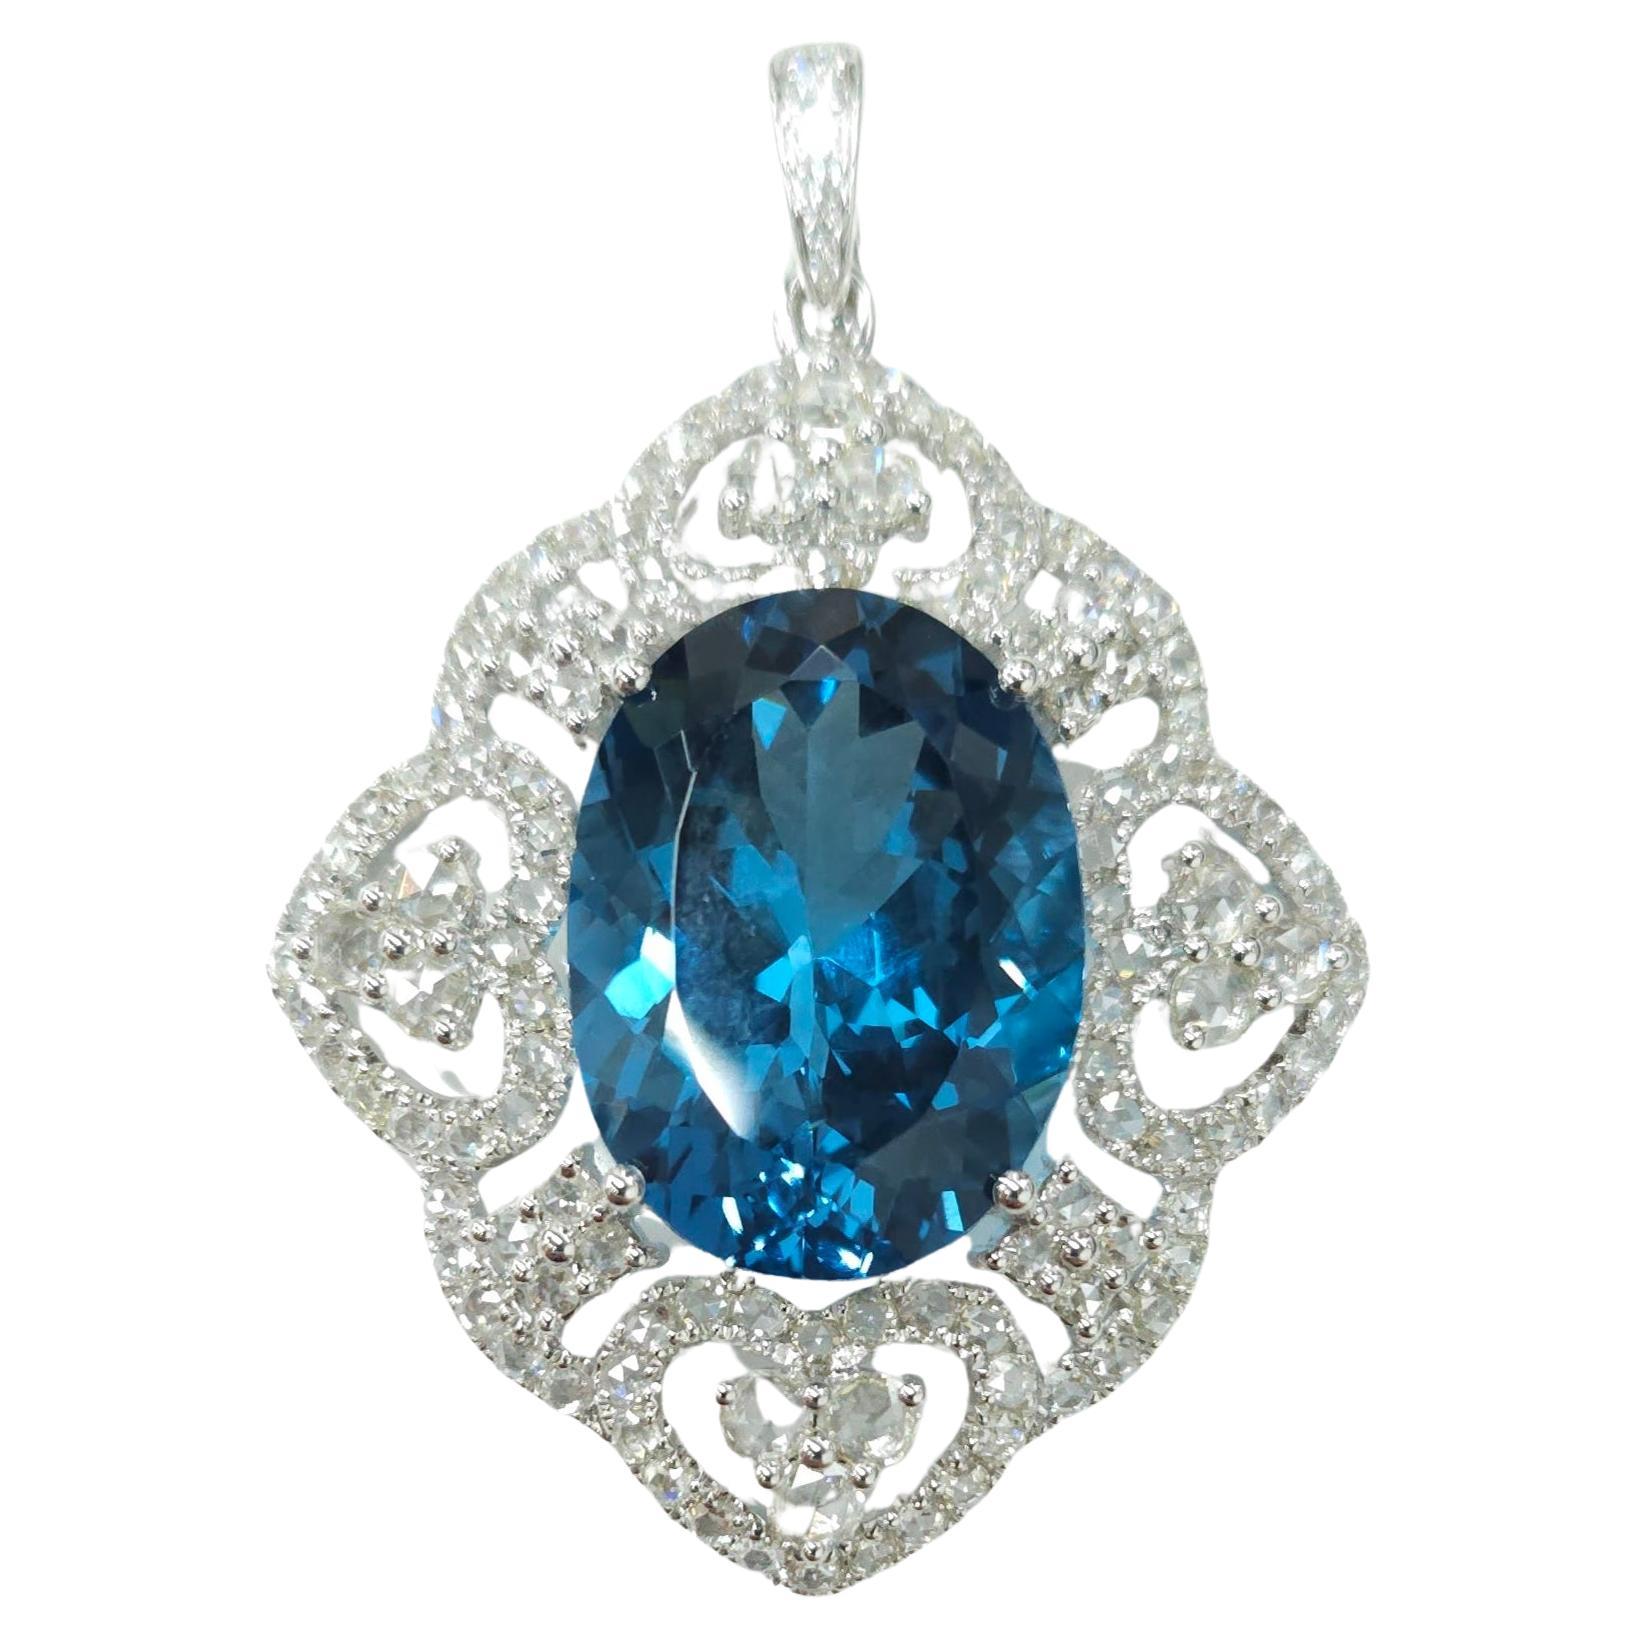 IGI Certified 24.10 Carat Blue Topaz & Diamond Pendant in 18K White Gold For Sale